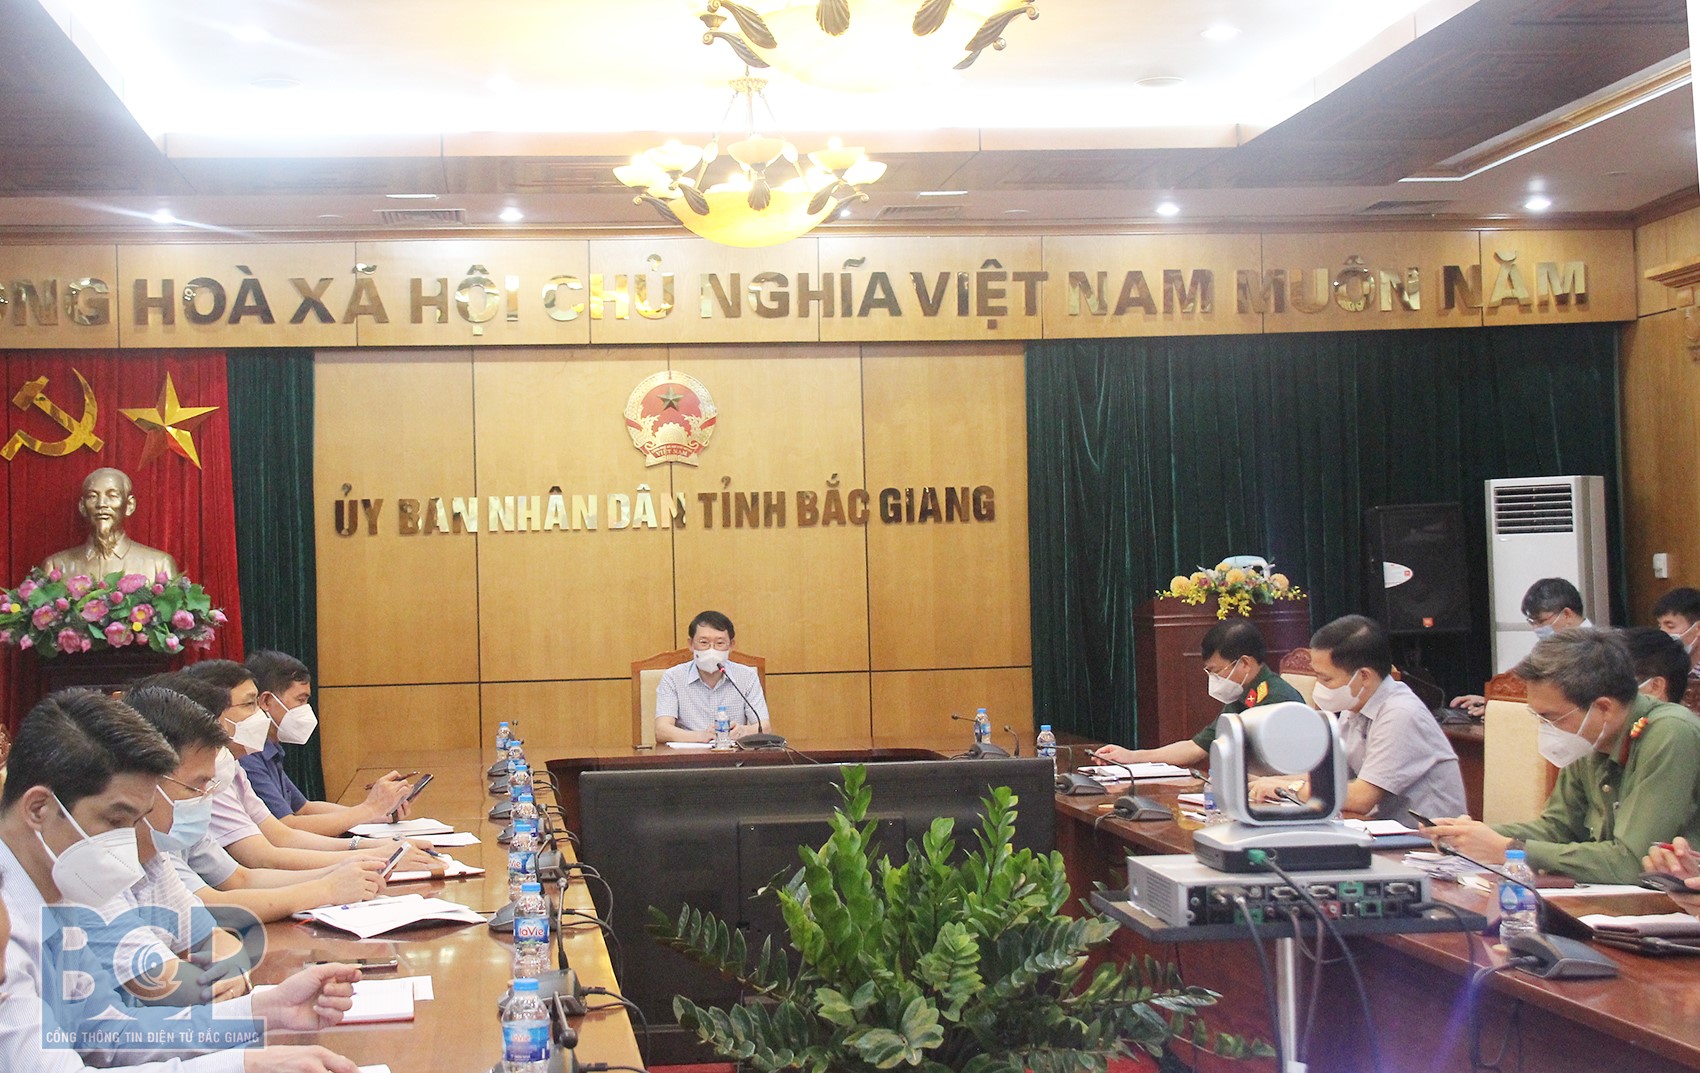 省人民委員会主席Le Anh Duong：社会経済の回復は感染予防任務と並行しなければならない。